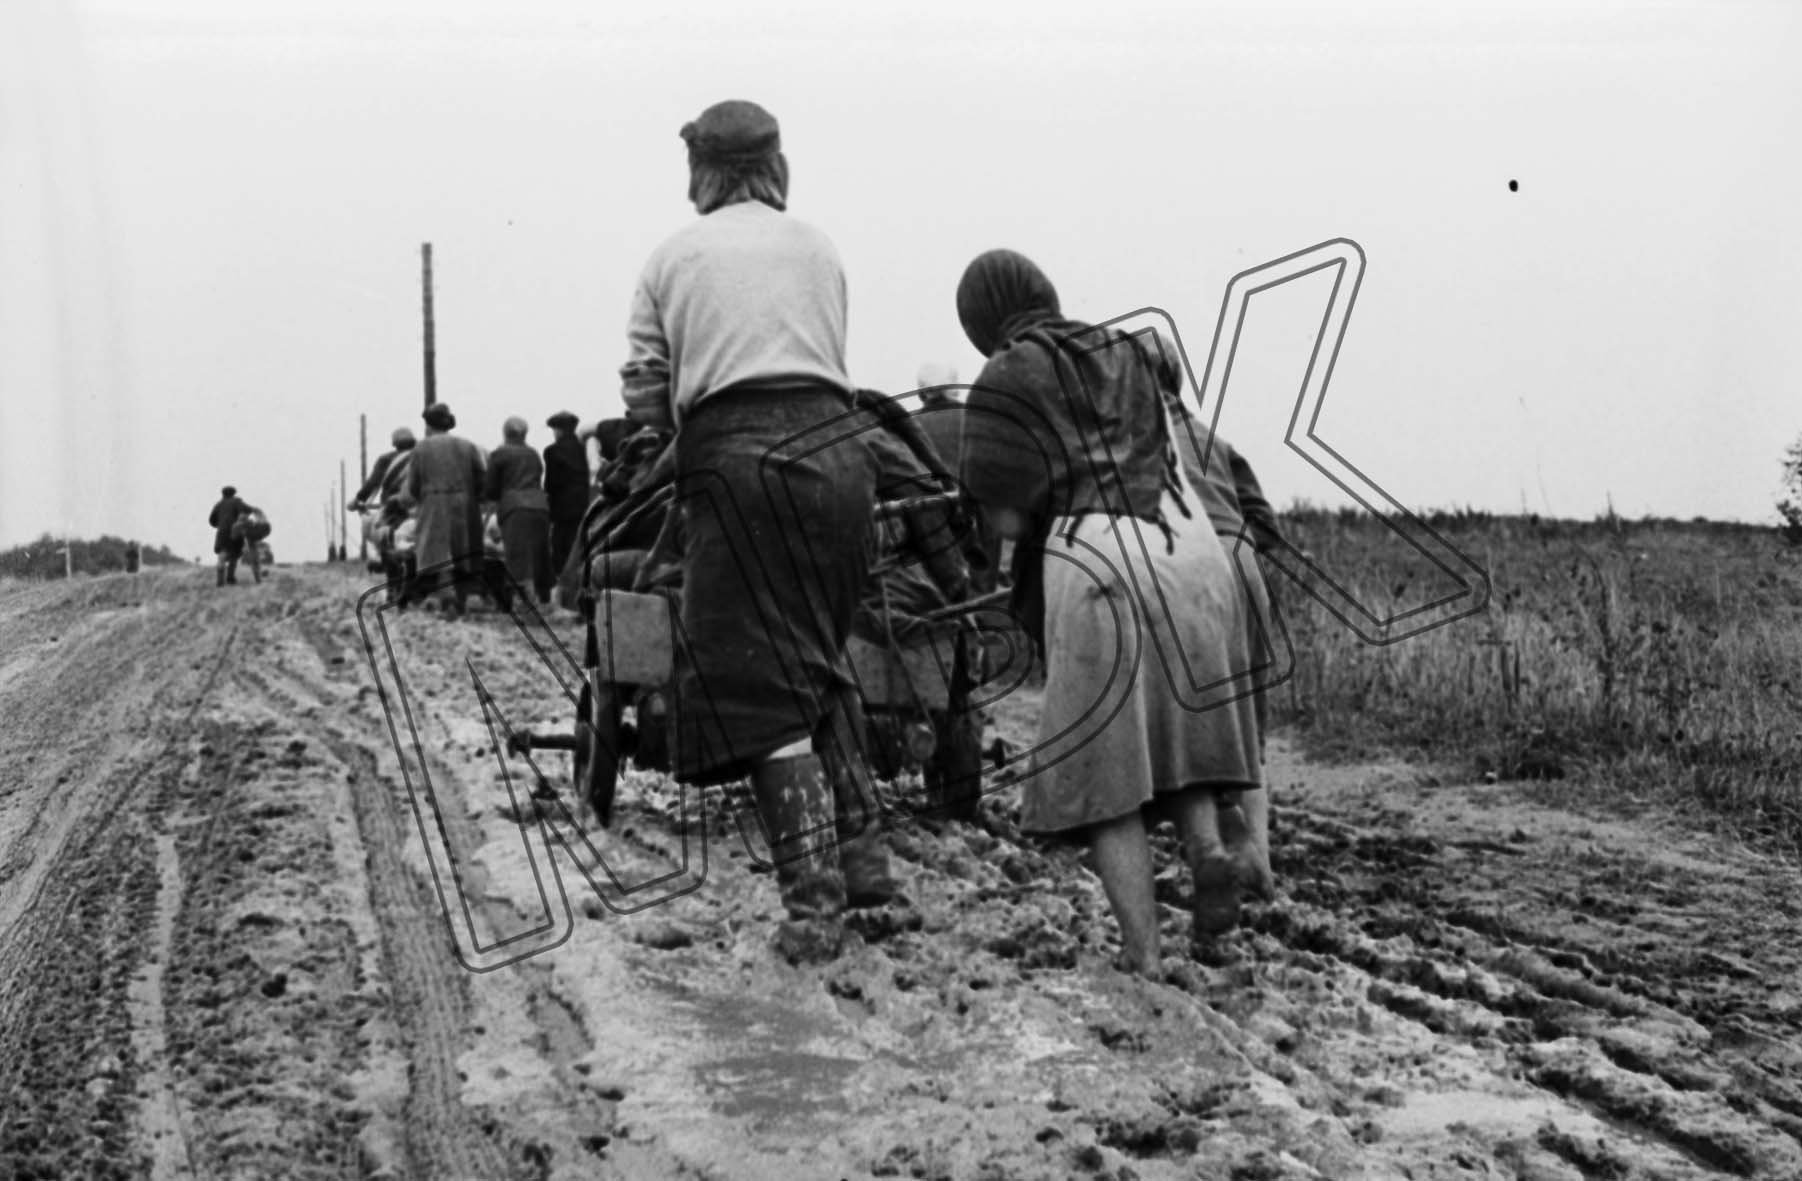 Fotografie: Zurückkehrende Flüchtlinge bei Smolensk, vermutlich September 1943 (Museum Berlin-Karlshorst RR-P)